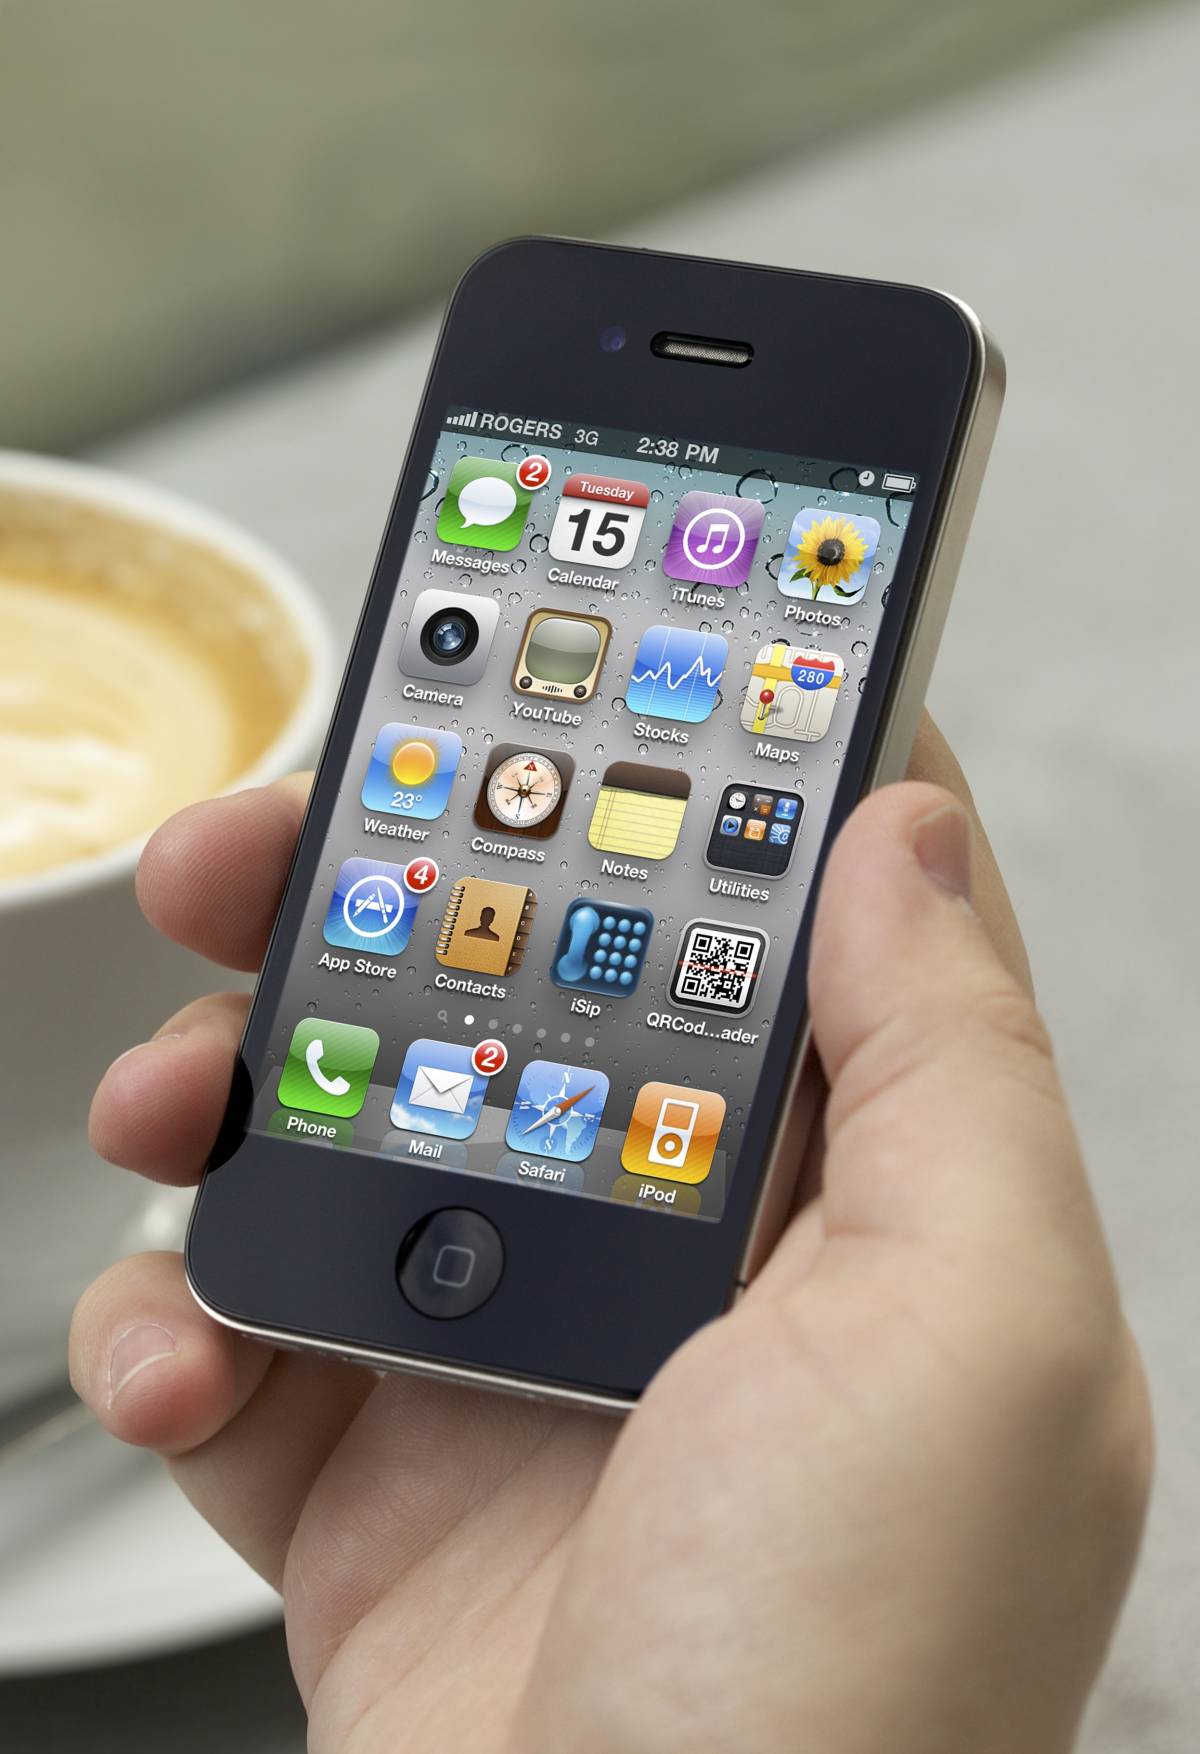 Telefonia, in Italia è boom per gli smartphone 
Nel 2011 il sorpasso sui vecchi cellulari